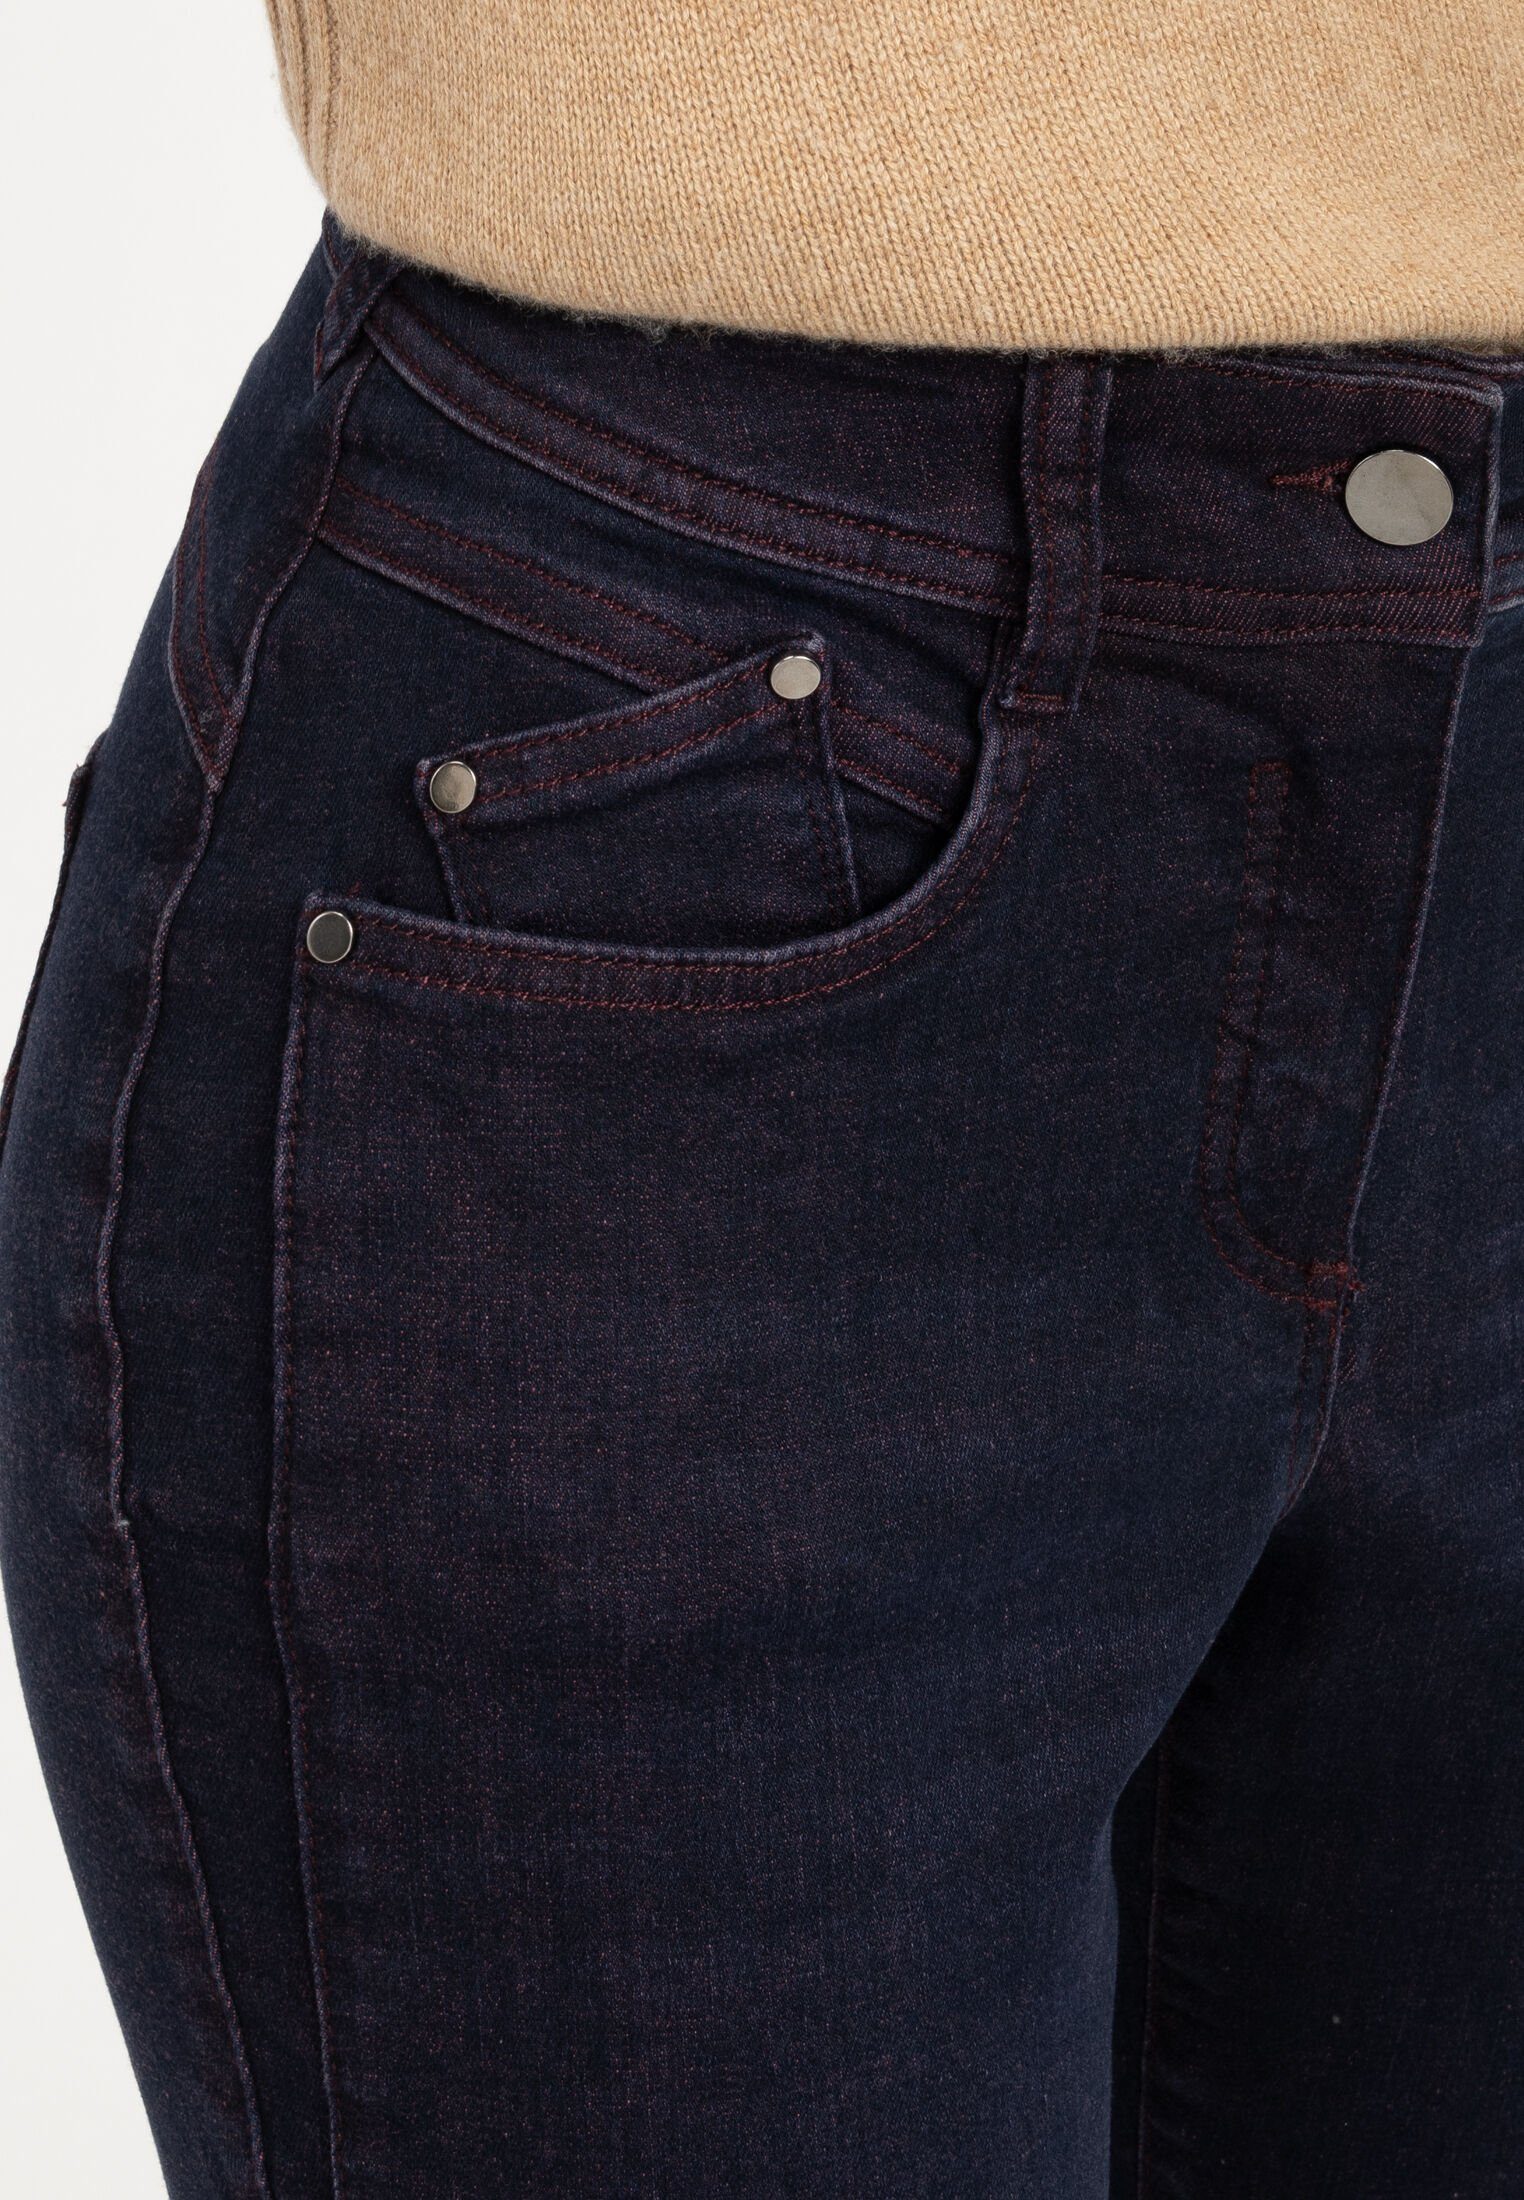 Recover Pants BORDEAUX BLAU/ DARLIN 5-Pocket-Jeans DENIM